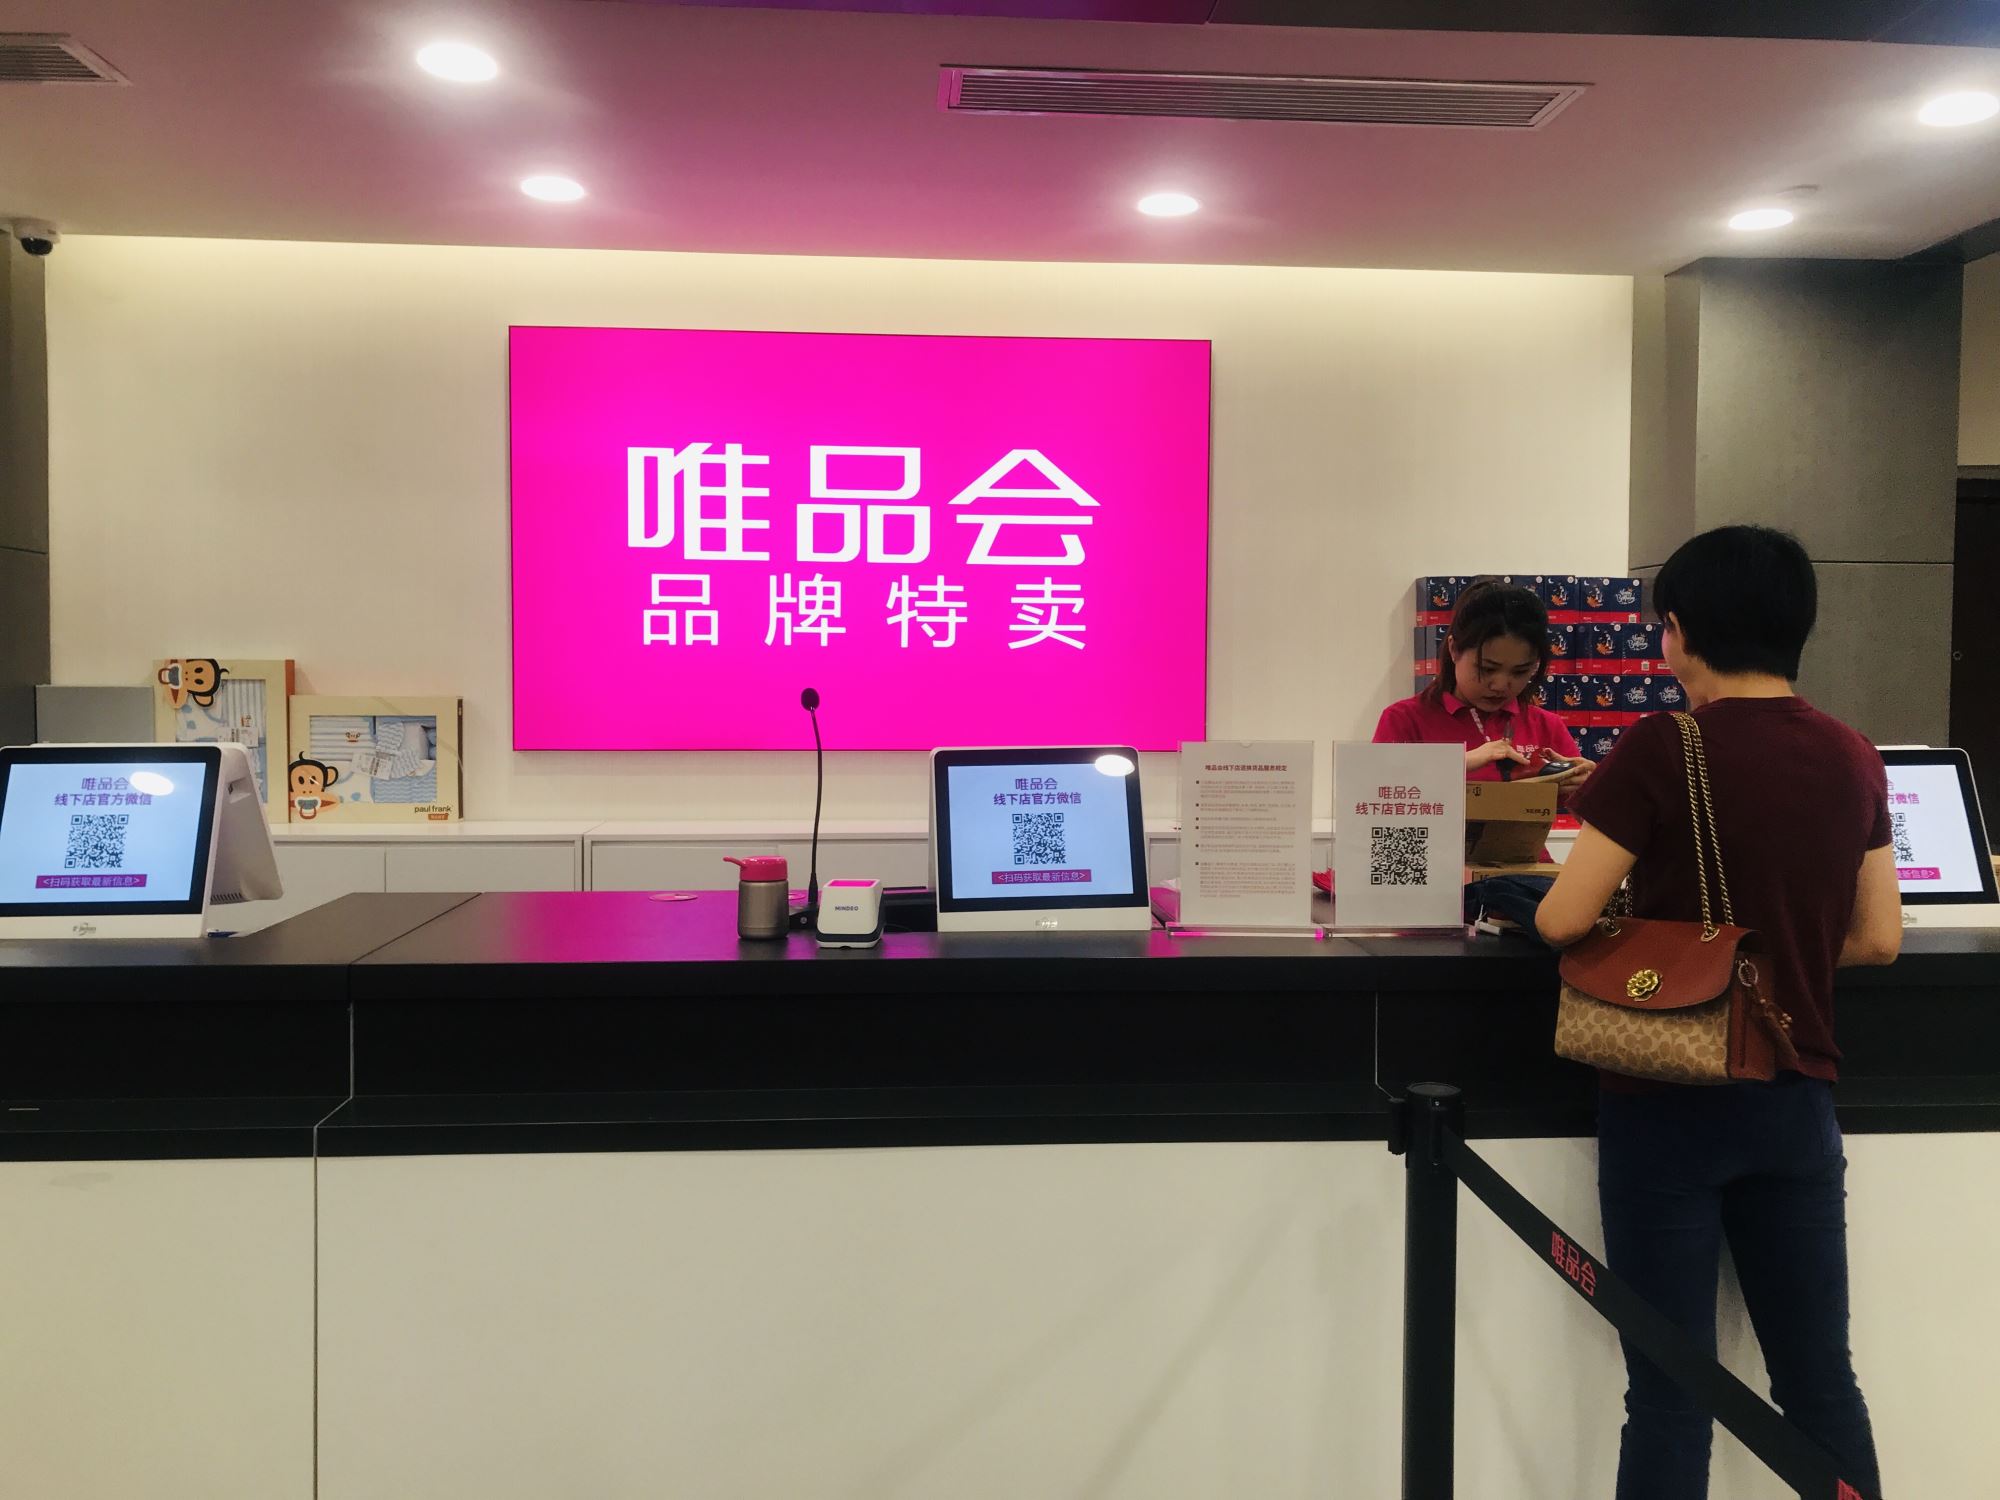 唯品会线下店入驻武汉金地广场  于9月20日正式开业